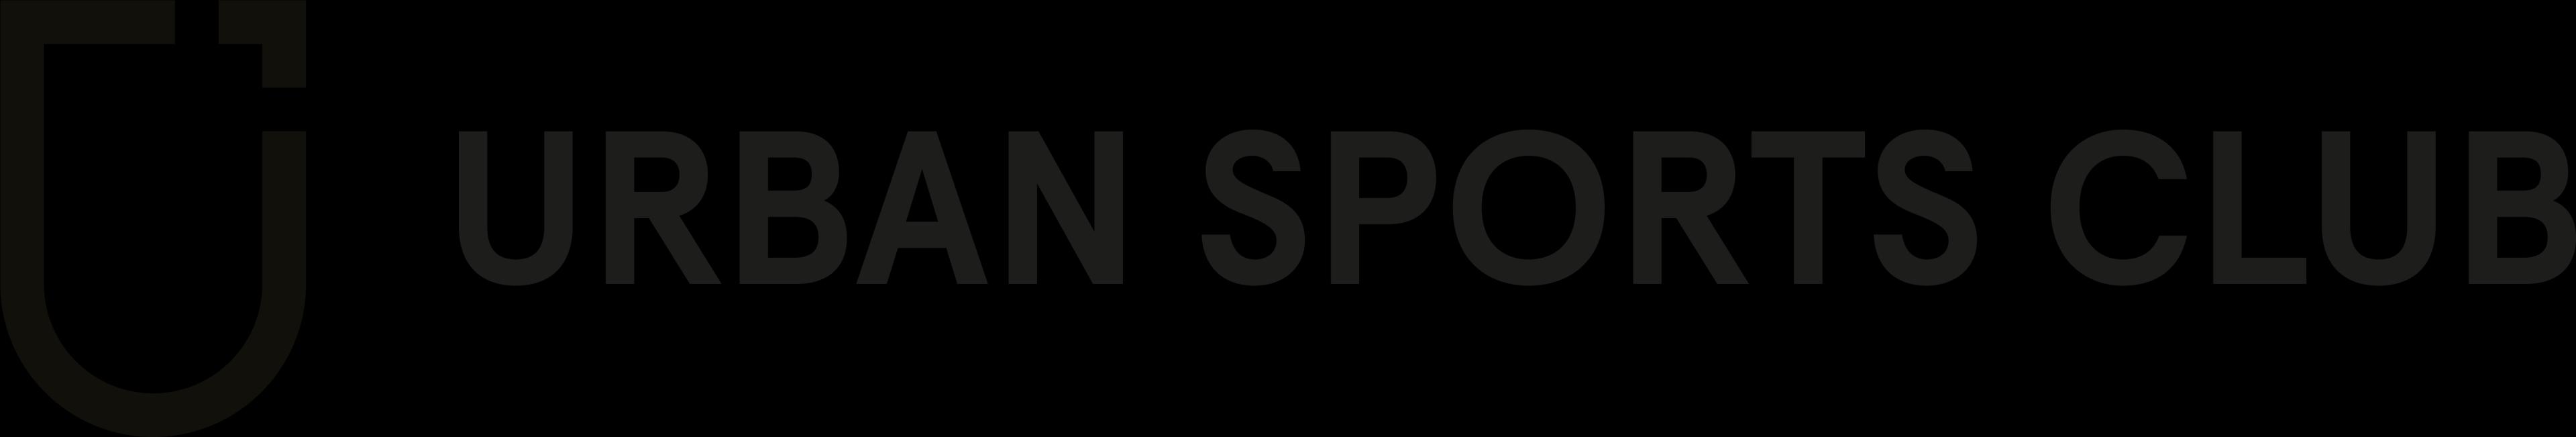 Urban Sports Club_logo